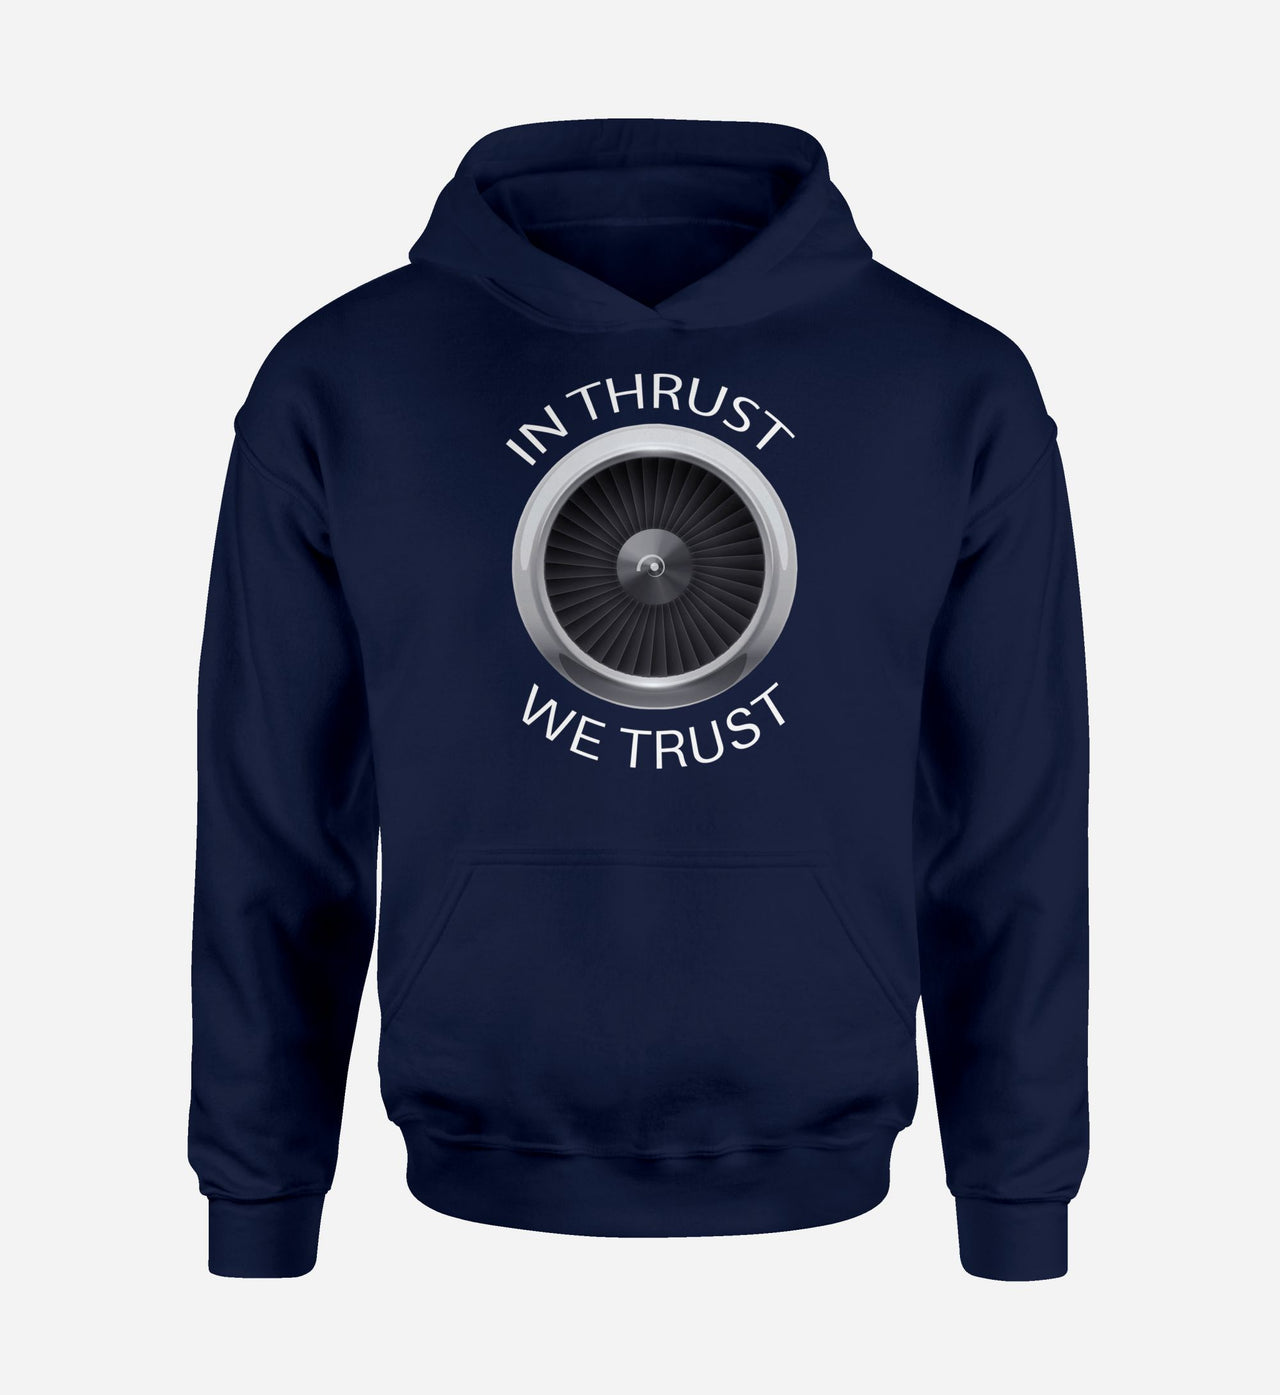 In Thrust We Trust Designed Hoodies